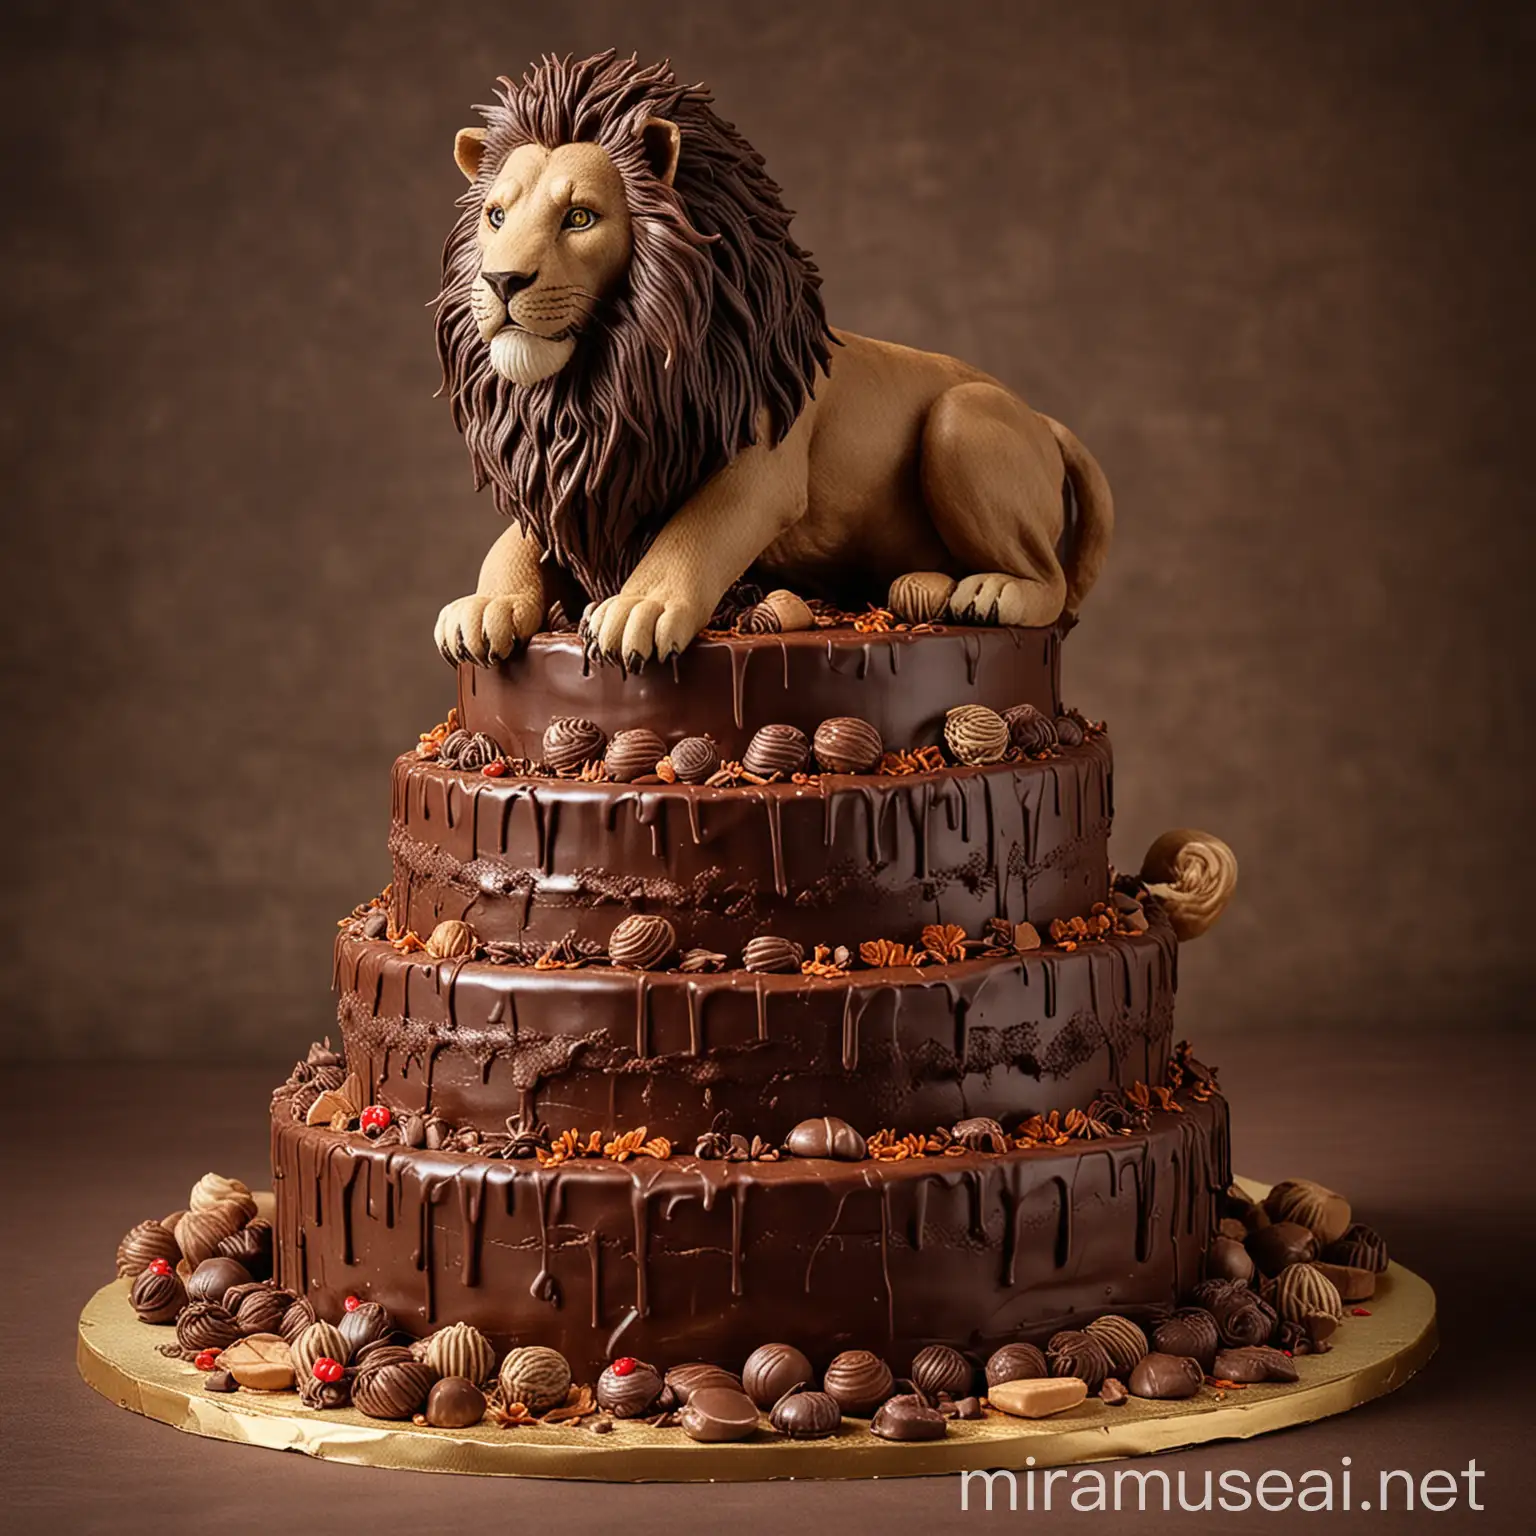 pastel de chocolate de 3 pisos delante de un león hambriento